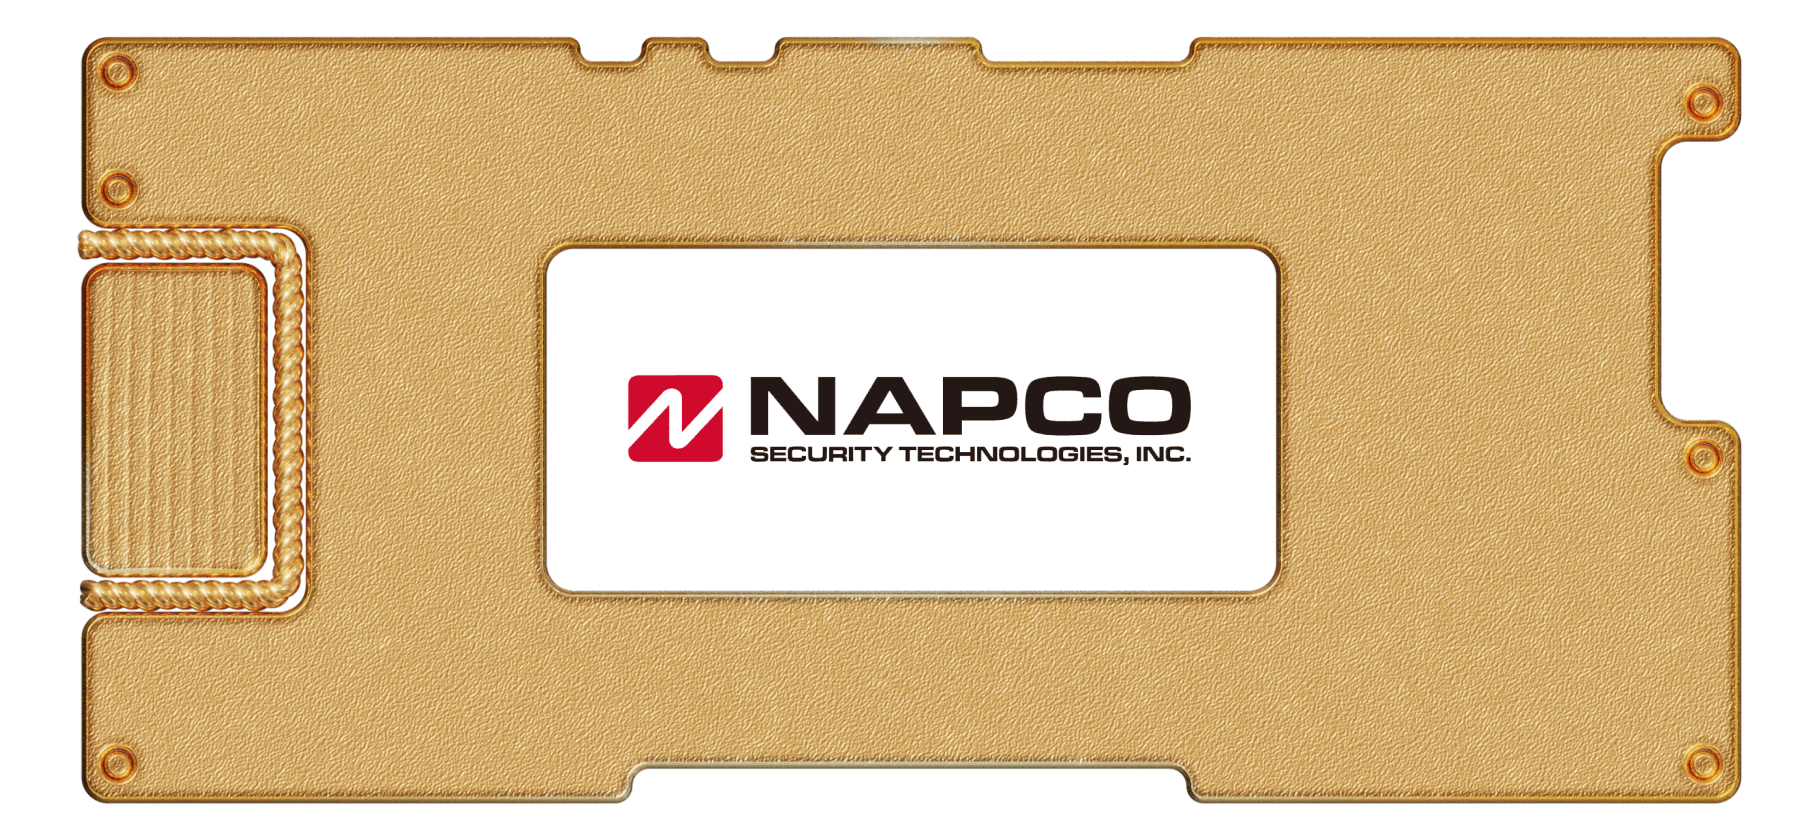 Инвестидея: Napco, потому что хаос все нарастает